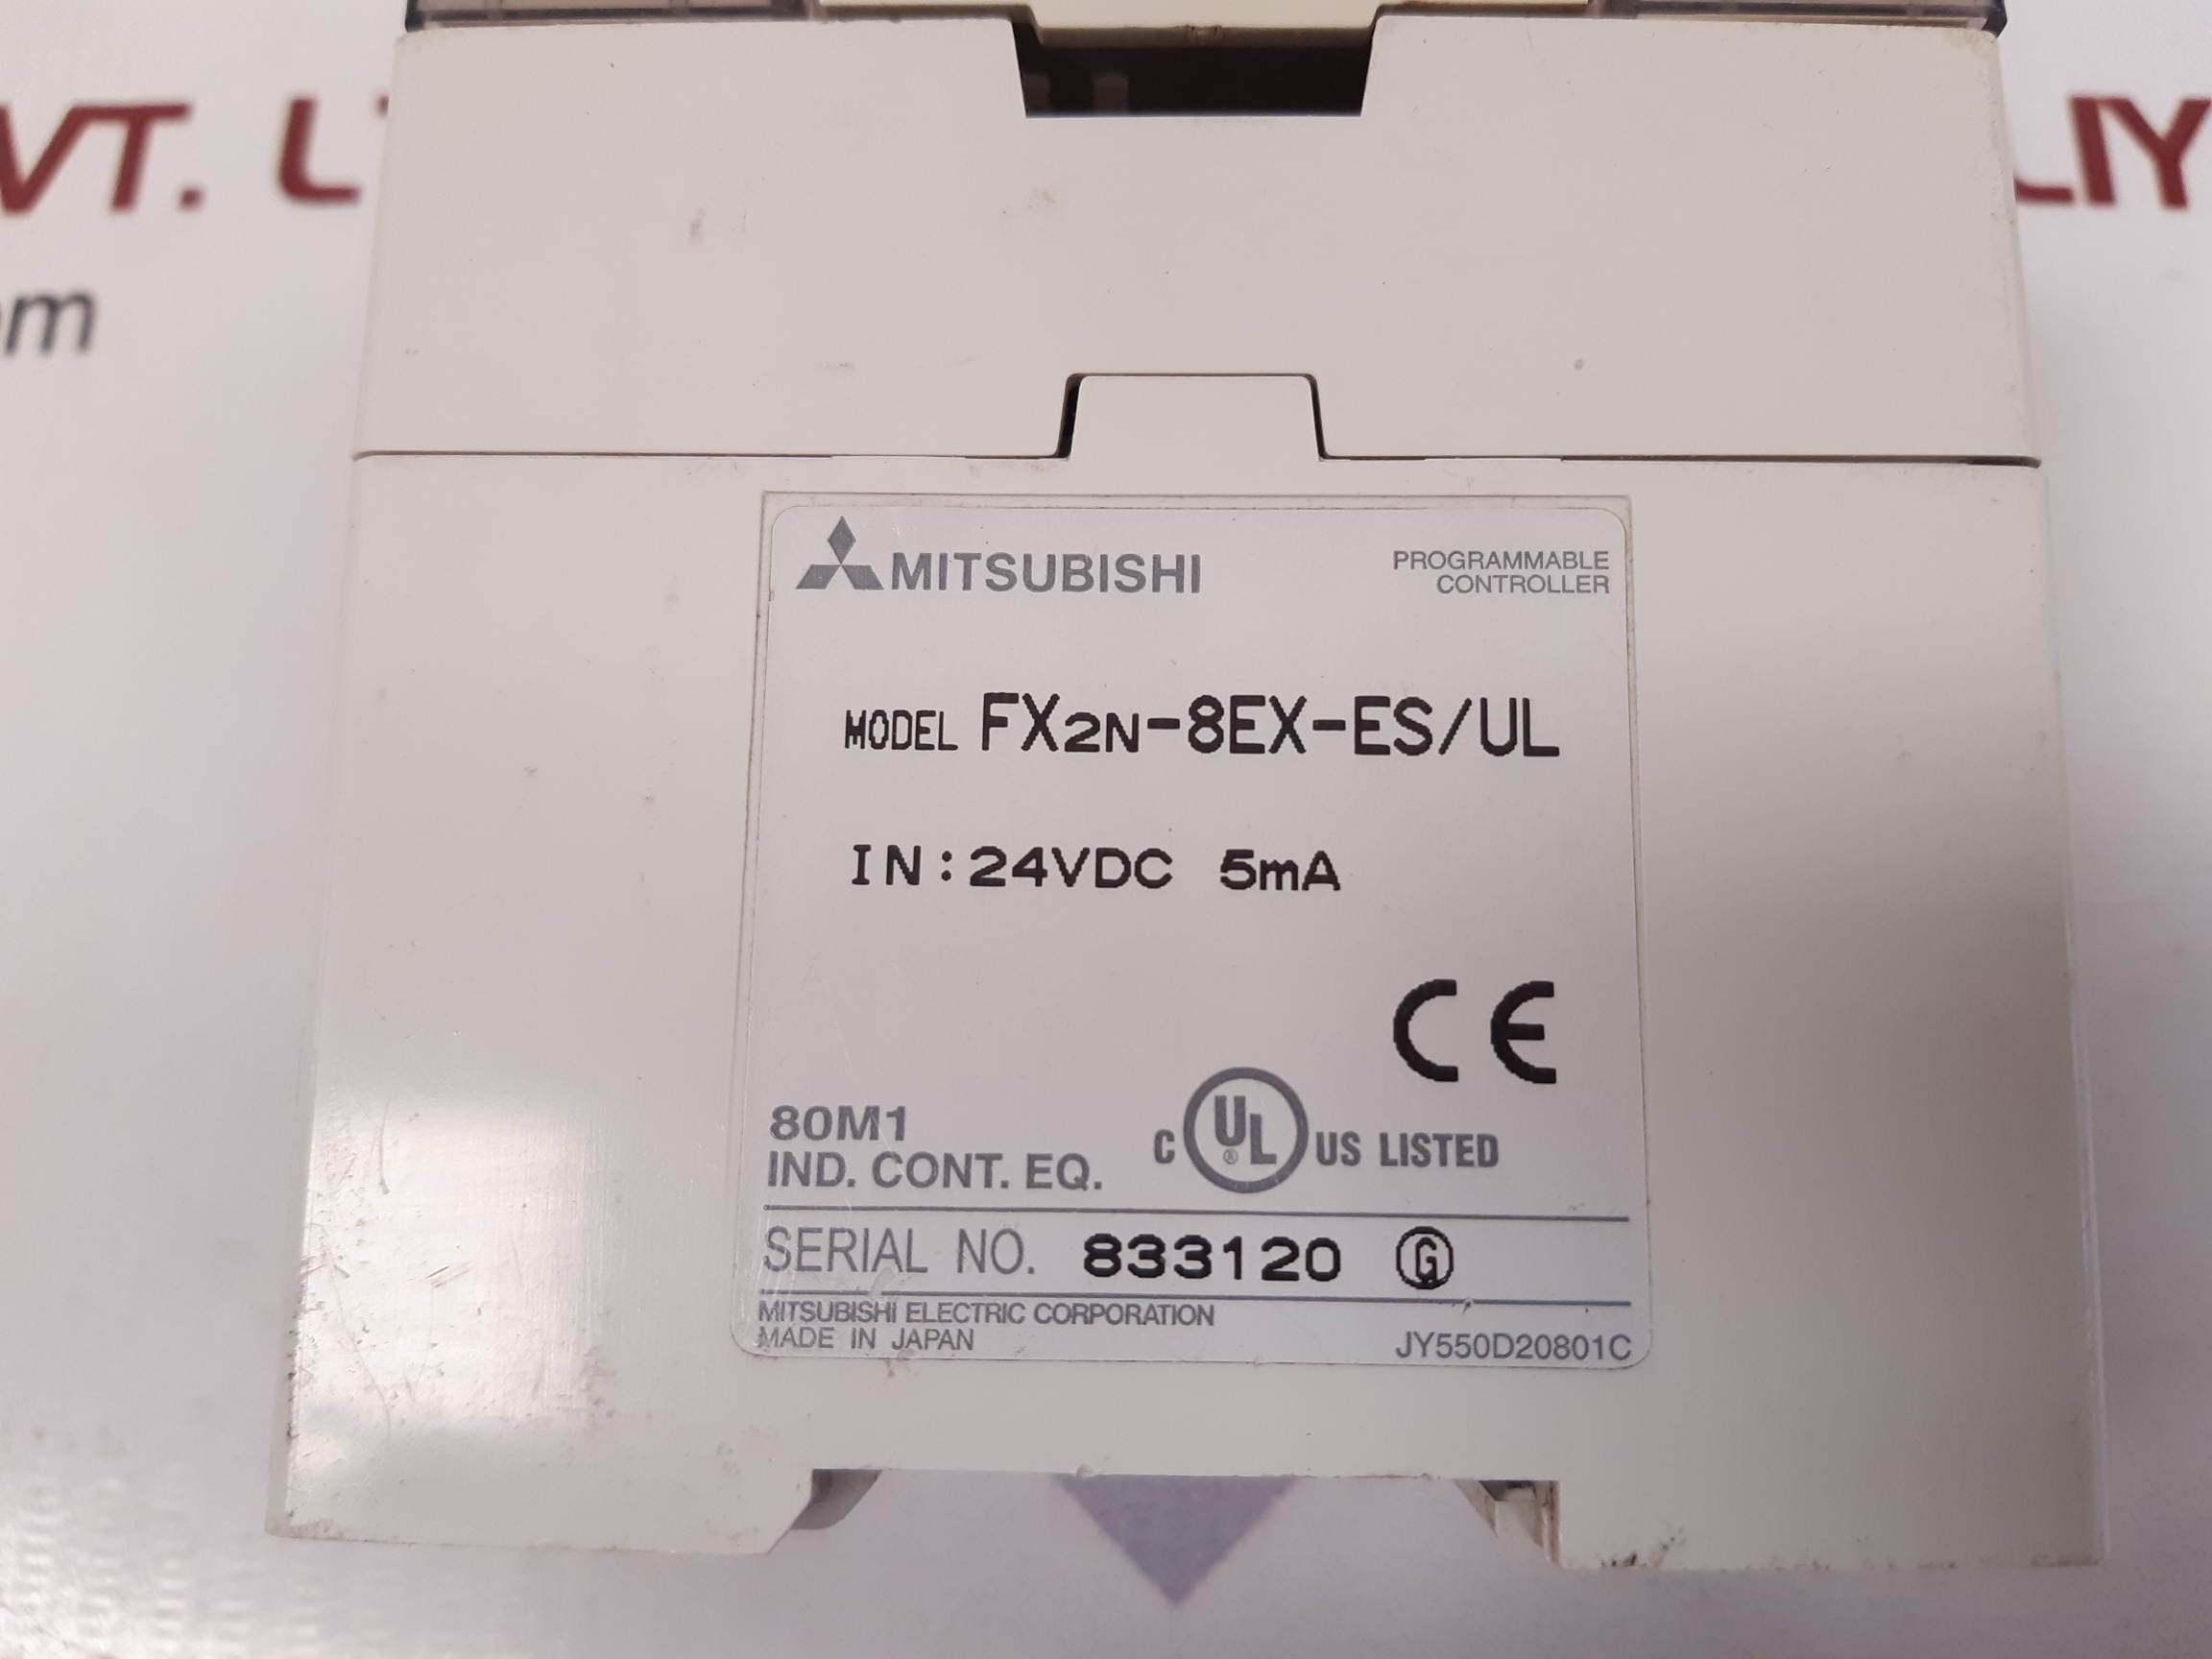 MITSUBISHI FX2N-8EX-ES/UL PROGRAMMABLE CONTROLLER JY550D20801C